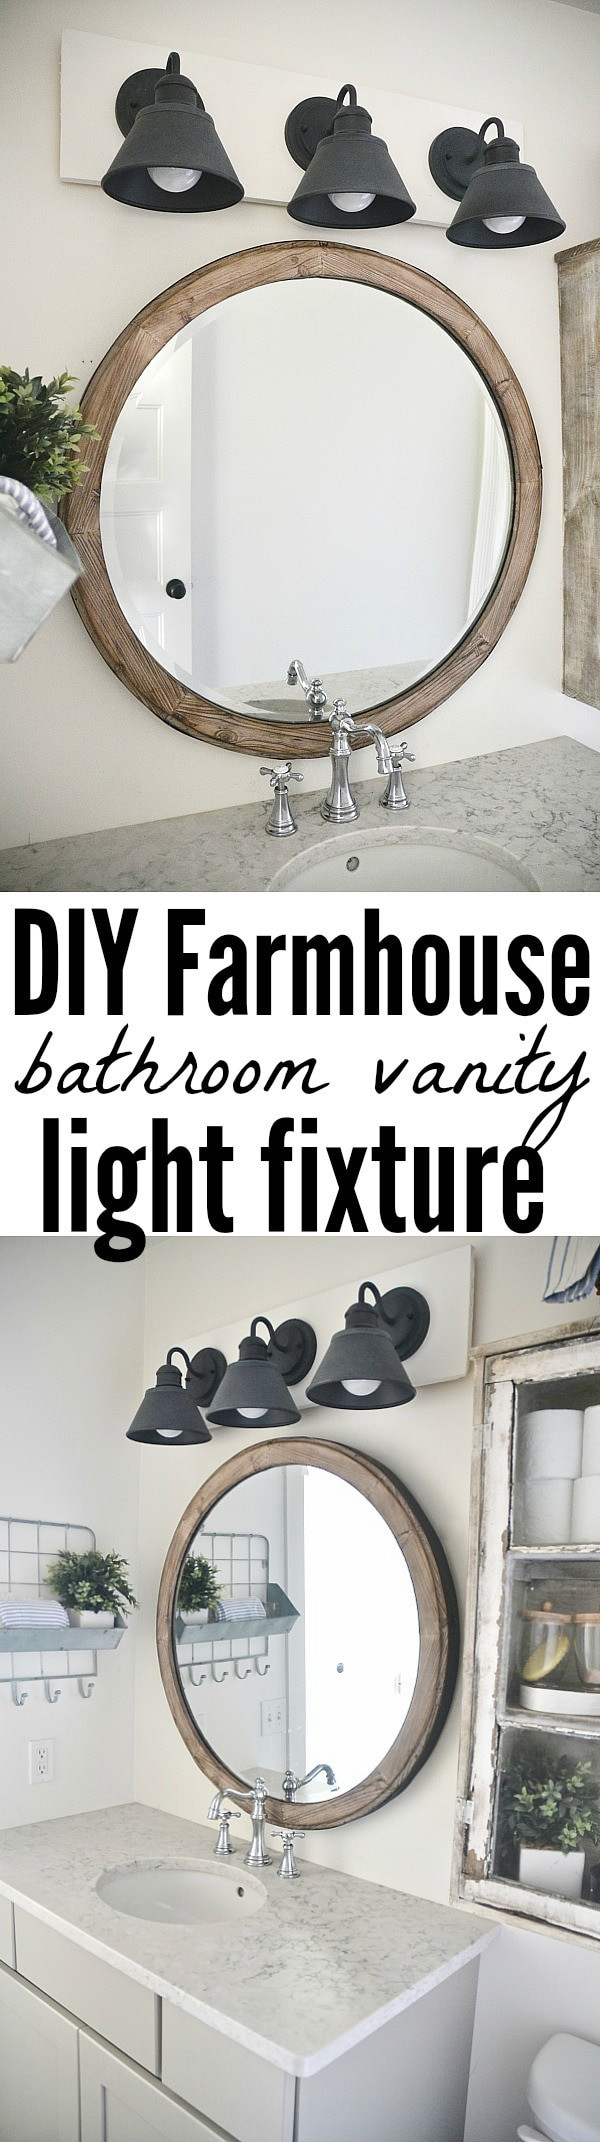 Light Fixture For Bathroom Vanity
 DIY Farmhouse Bathroom Vanity Light Fixture